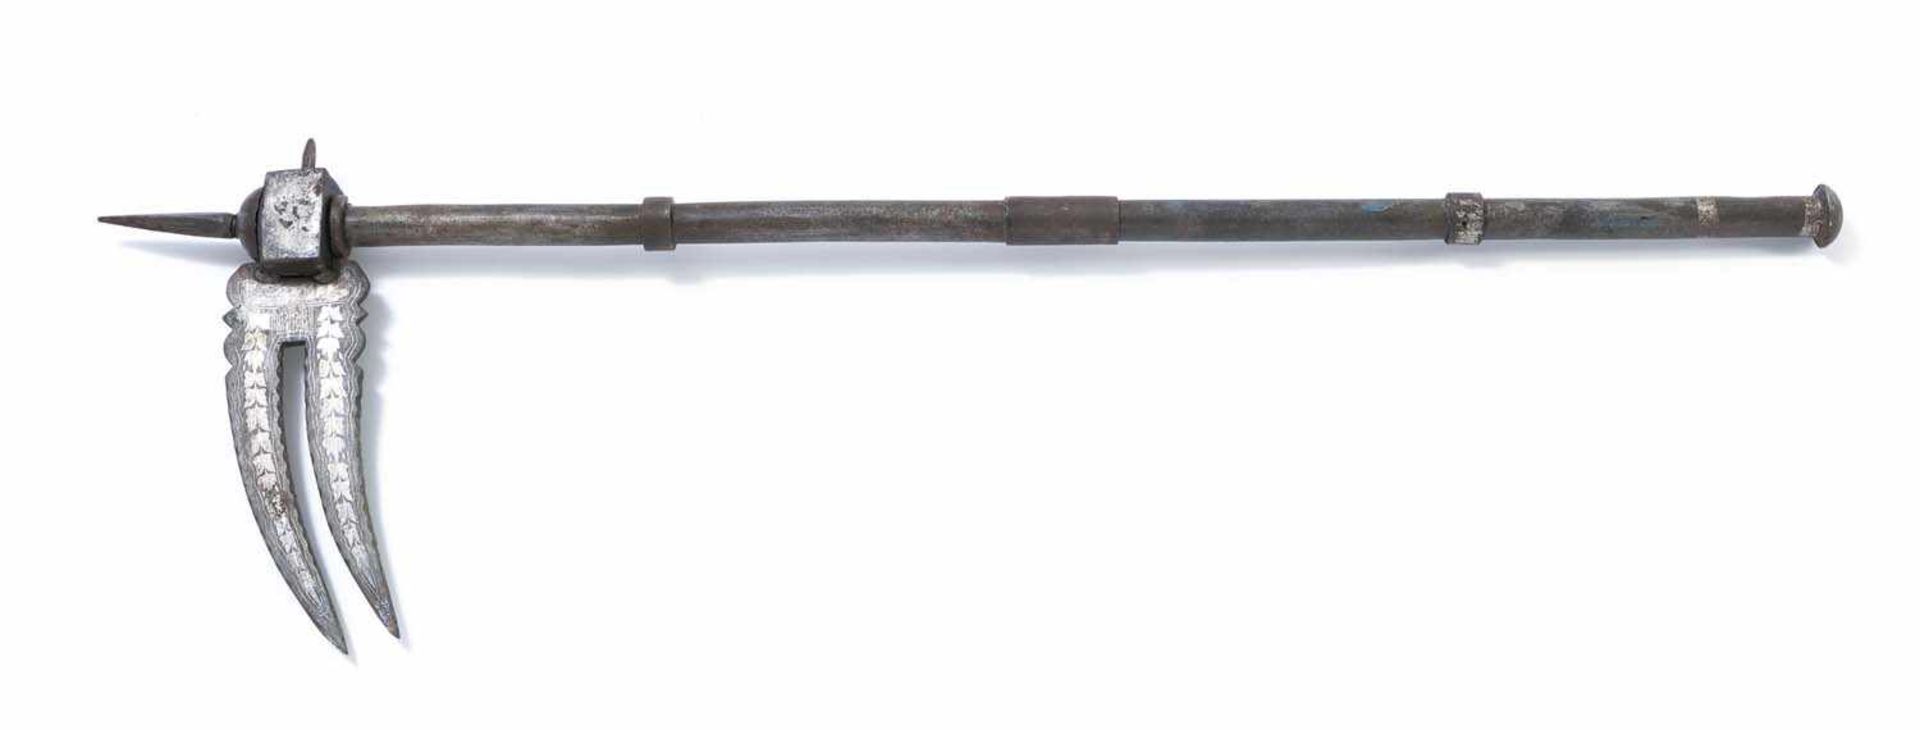 Zwei StreitwaffenIndien, 19. Jh.L. 54/79 cmStreithammer "Zaghnal" und Streitaxt "Tabar". Eisen und - Bild 3 aus 3